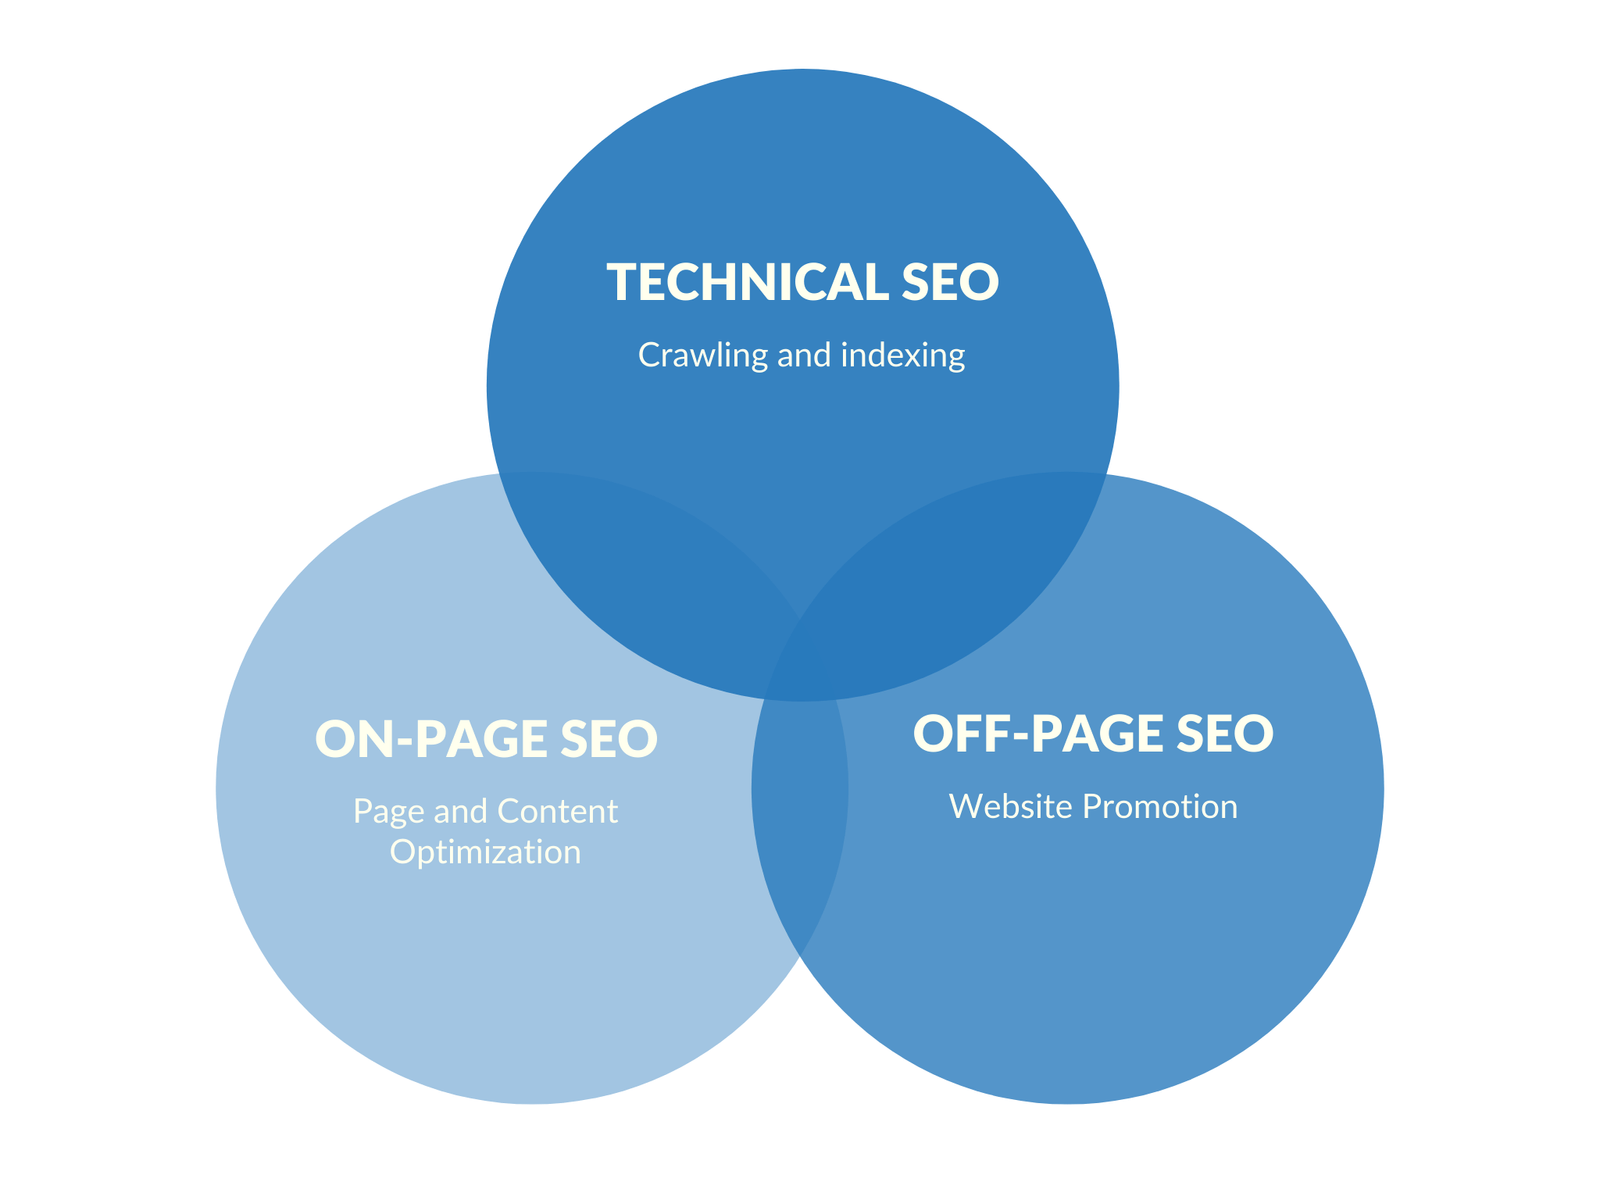 Os três principais processos de SEO - SEO Técnico, SEO On-page e SEO Offpage